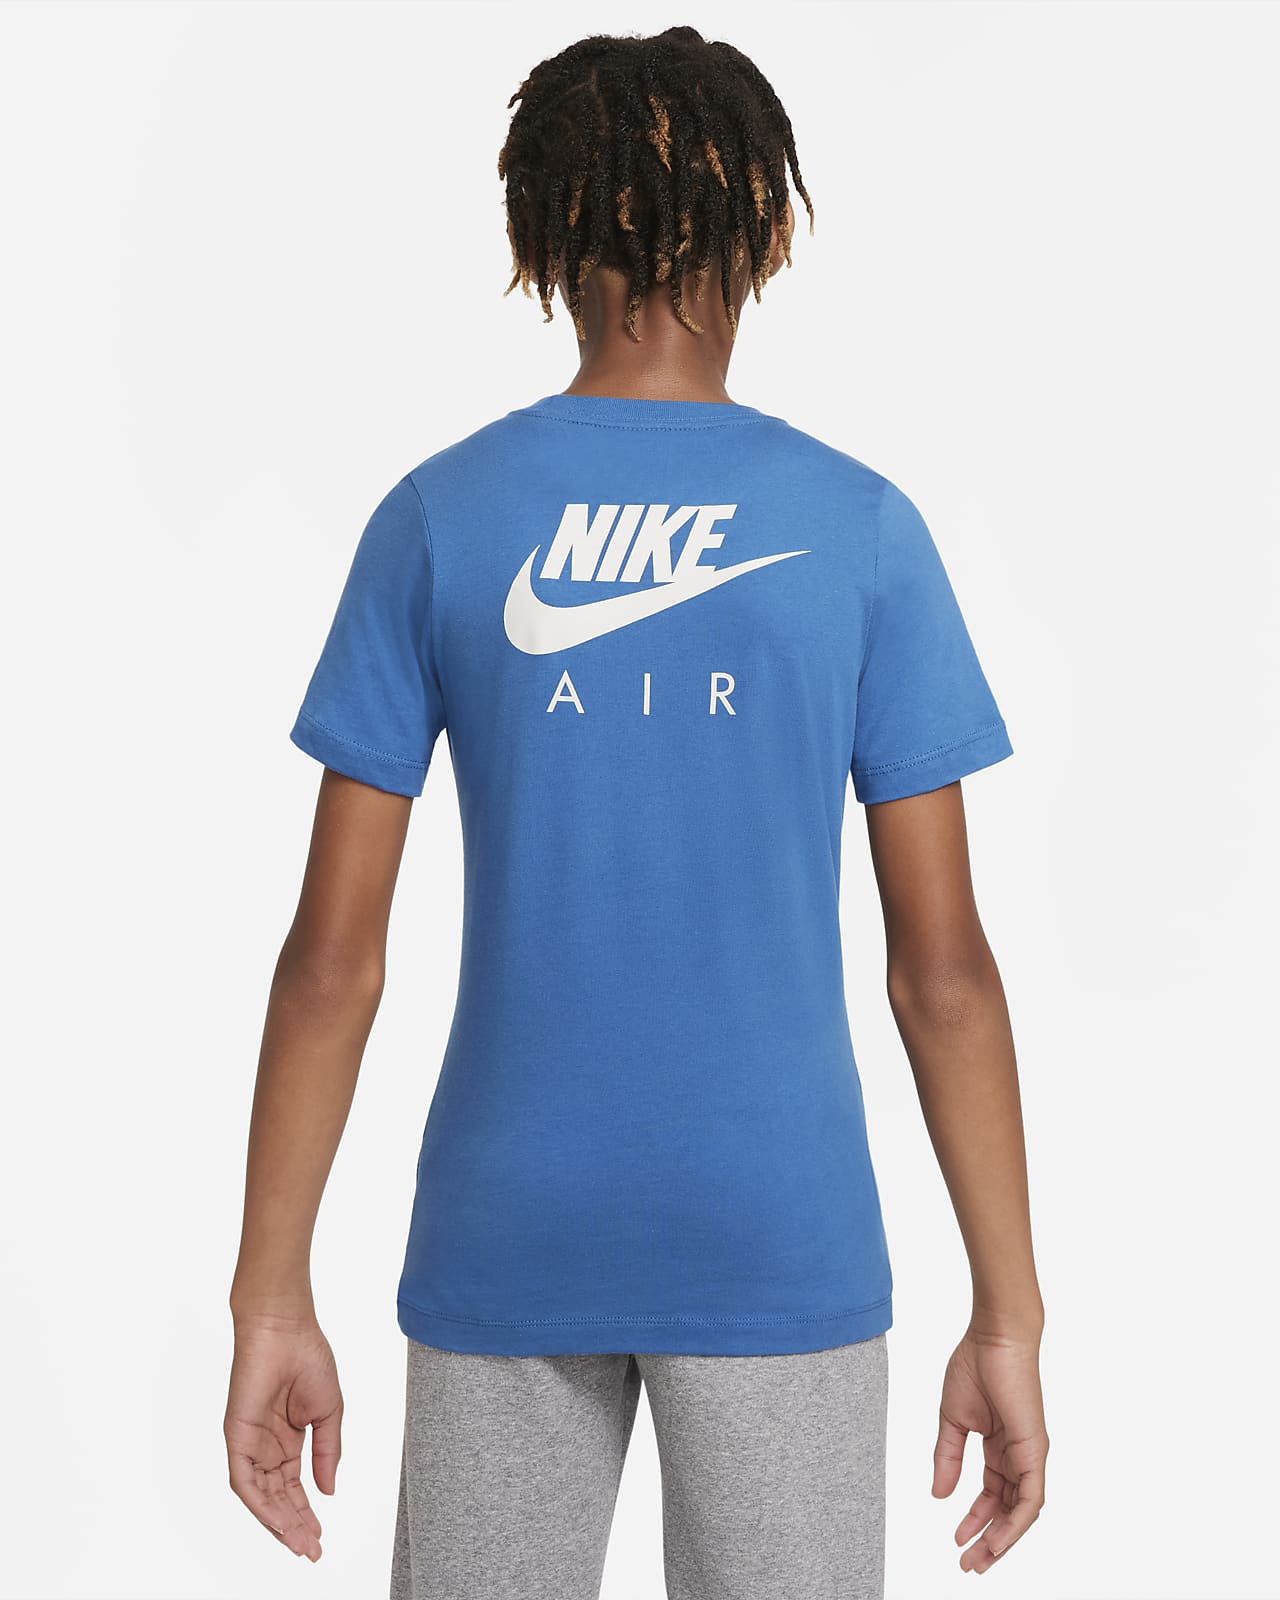 Aanbevolen Besparing Nauwgezet Nike Air T-shirt voor jongens. Nike BE